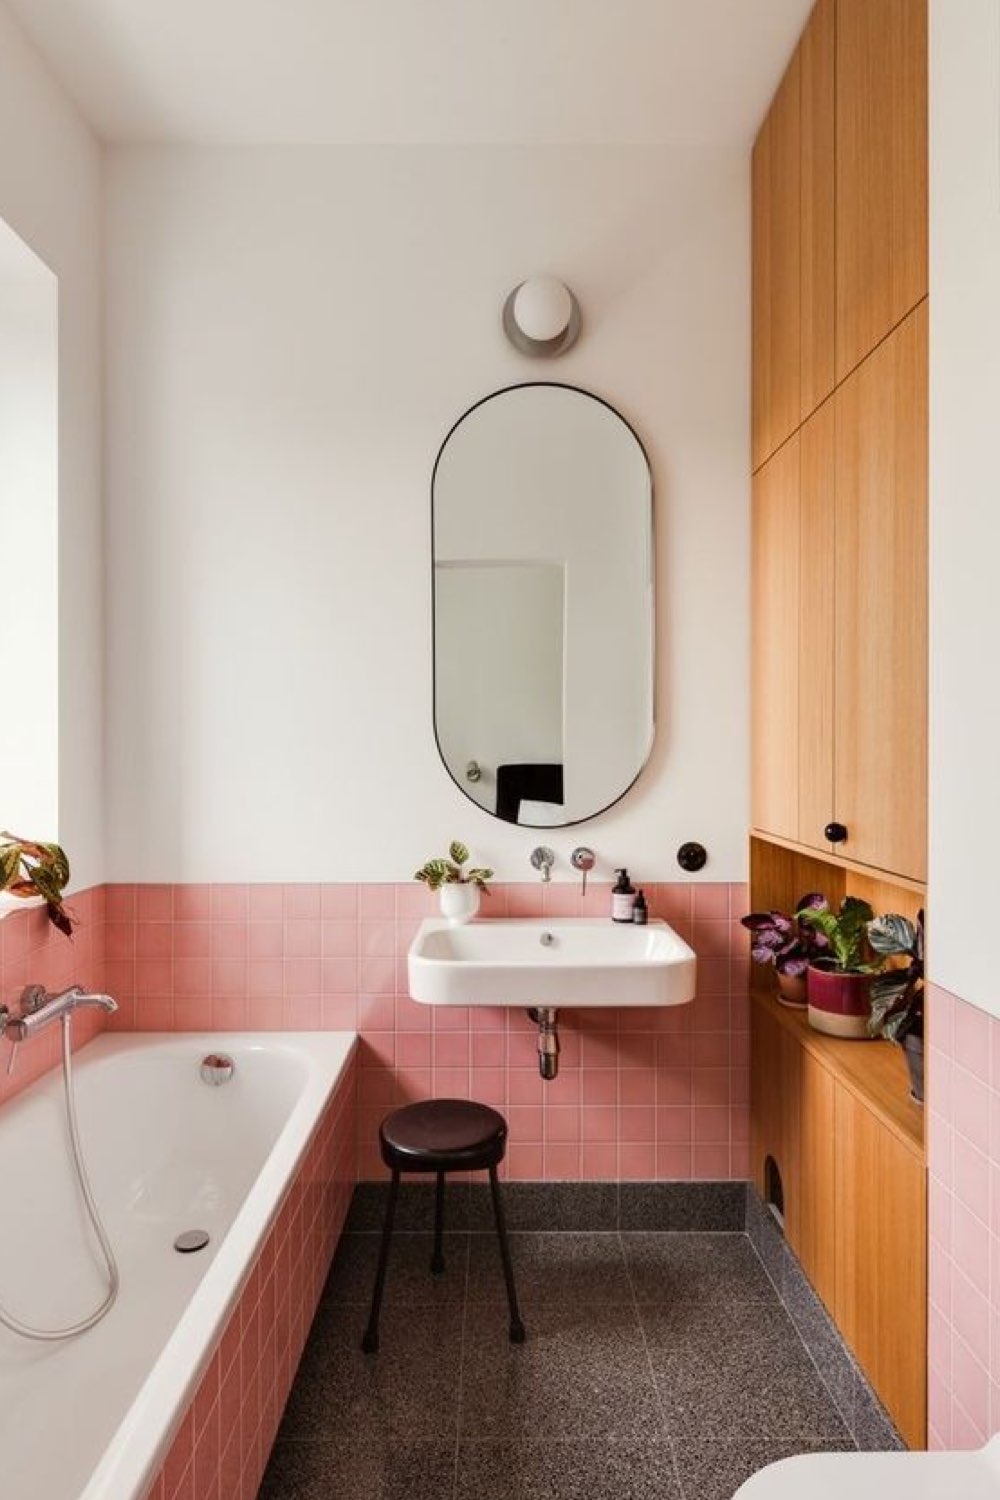 salle de bain exemple touche de couleur rénovation idée soubassement rose carrelage petite espace avec baignoire